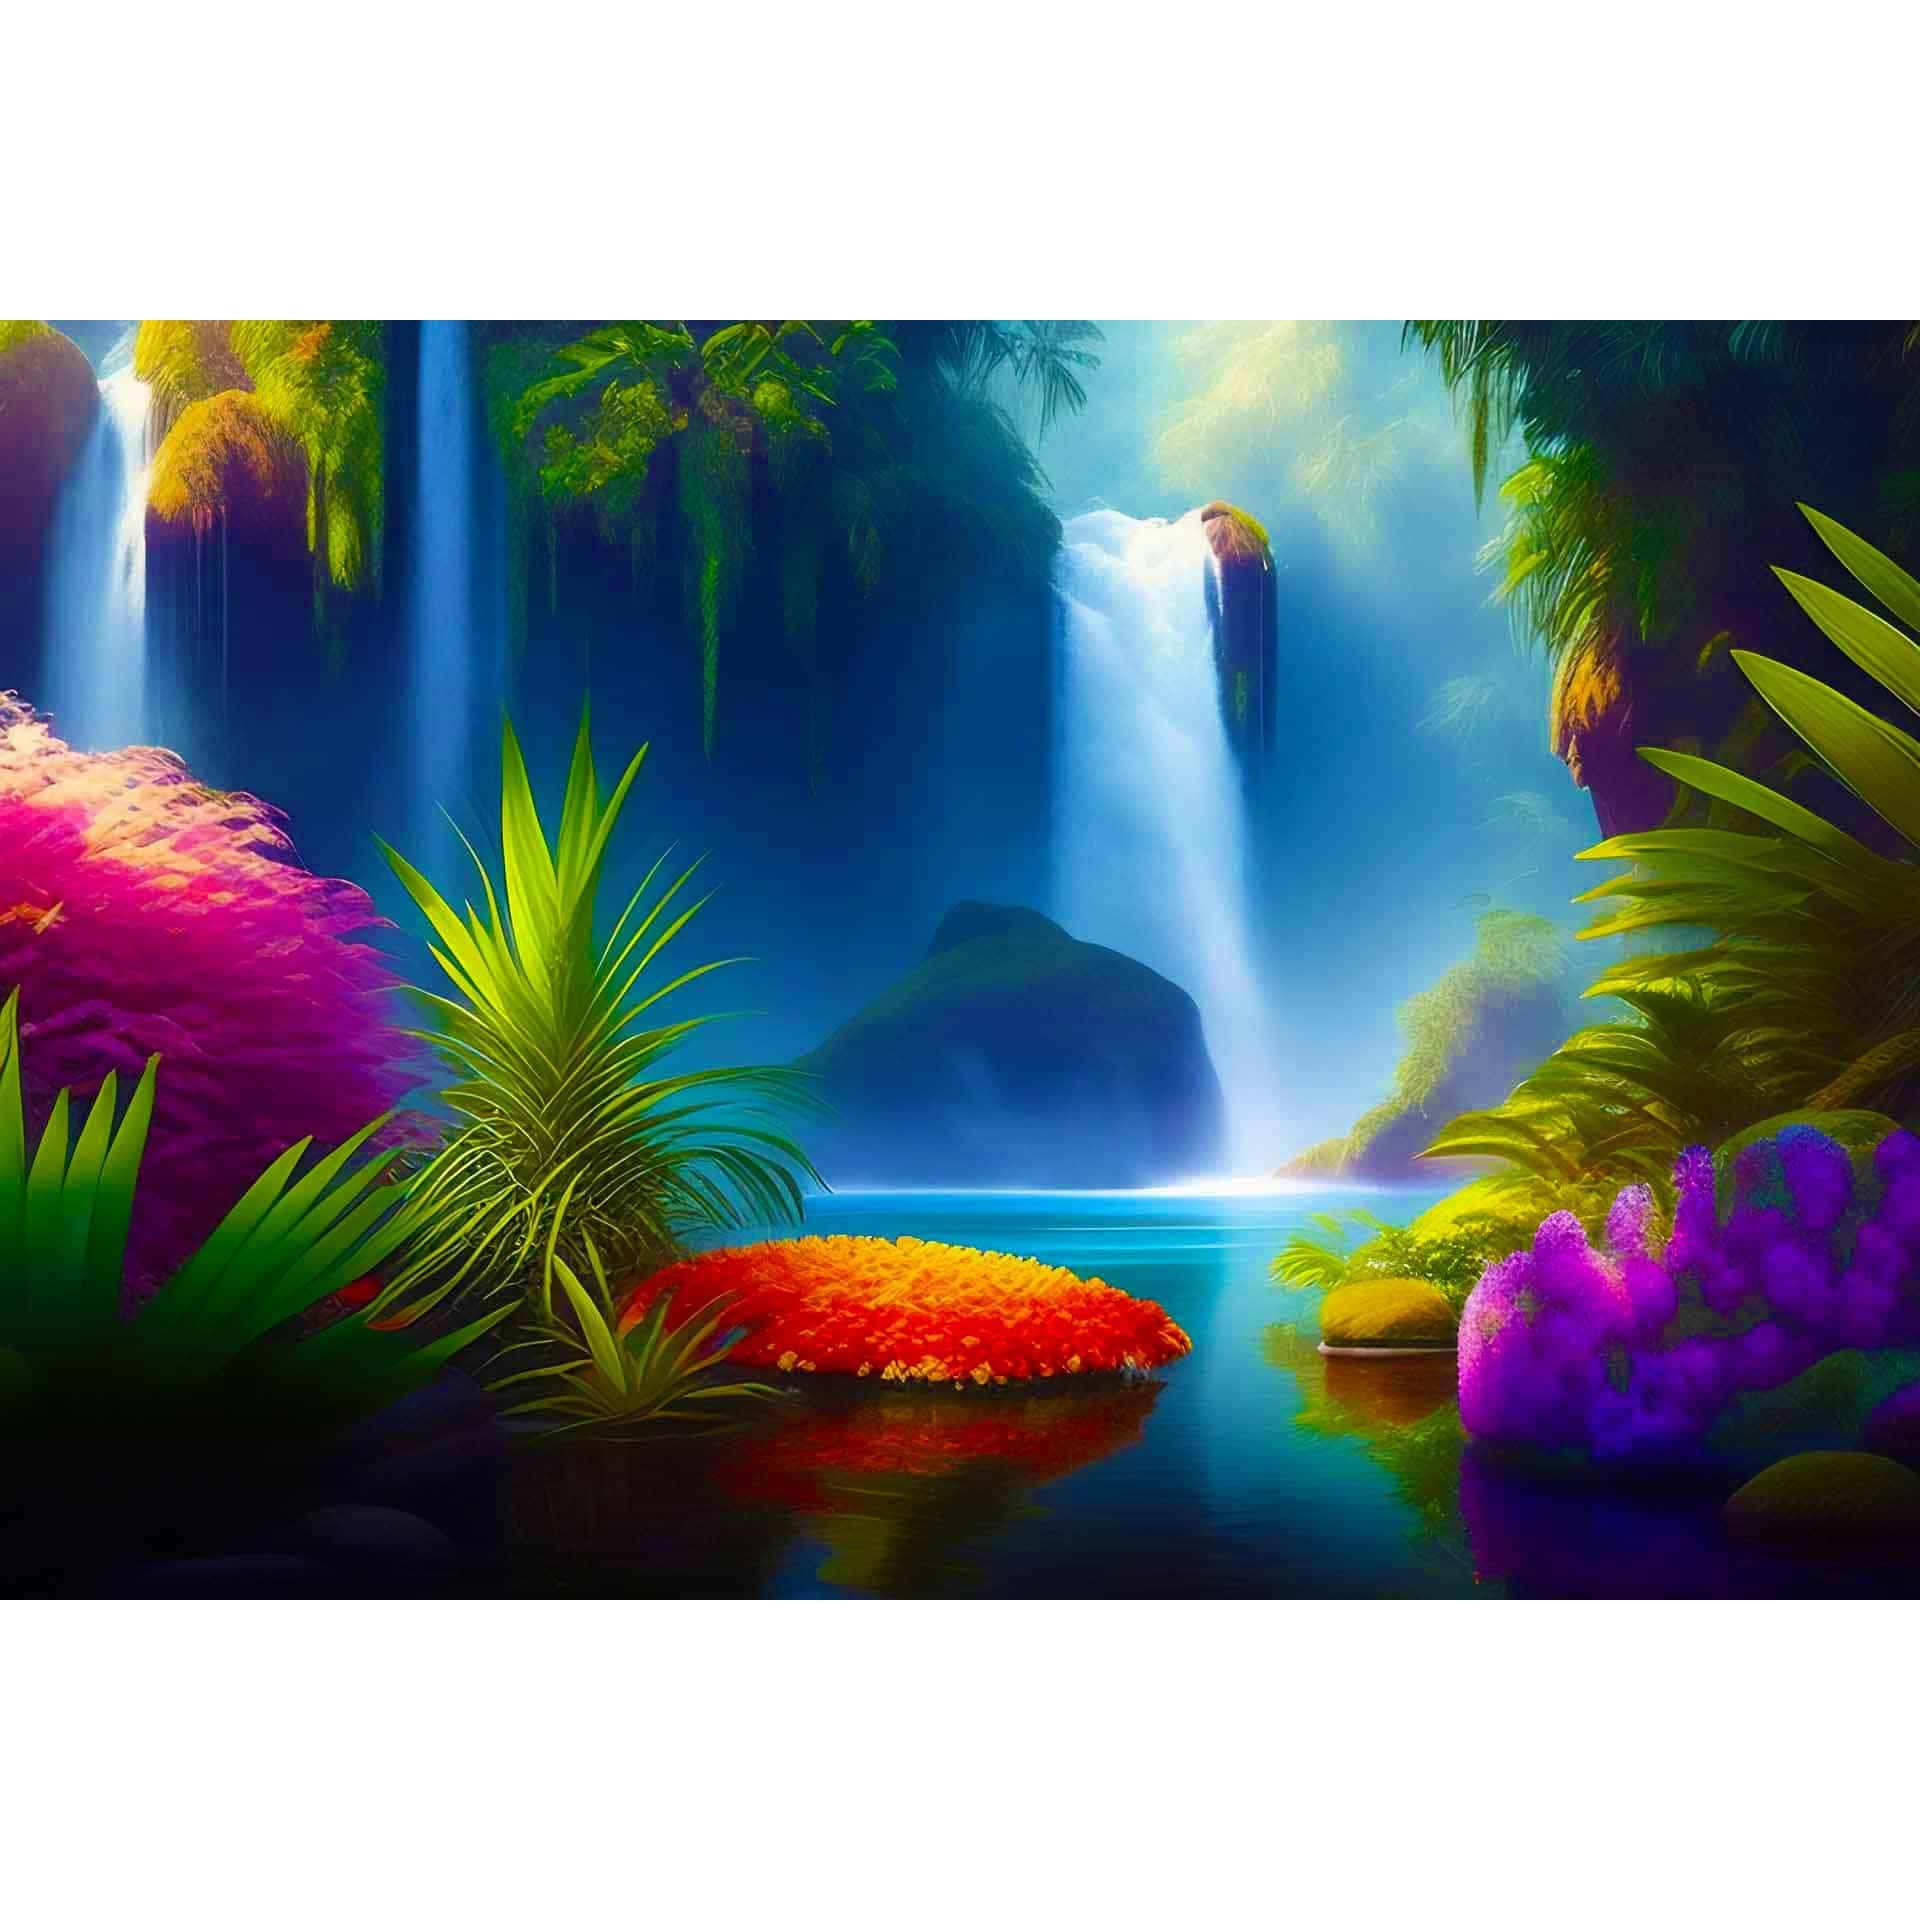 Diamond Painting - Wasserfallparadies - gedruckt in Ultra-HD - Horizontal, Landschaft, Wasserfall